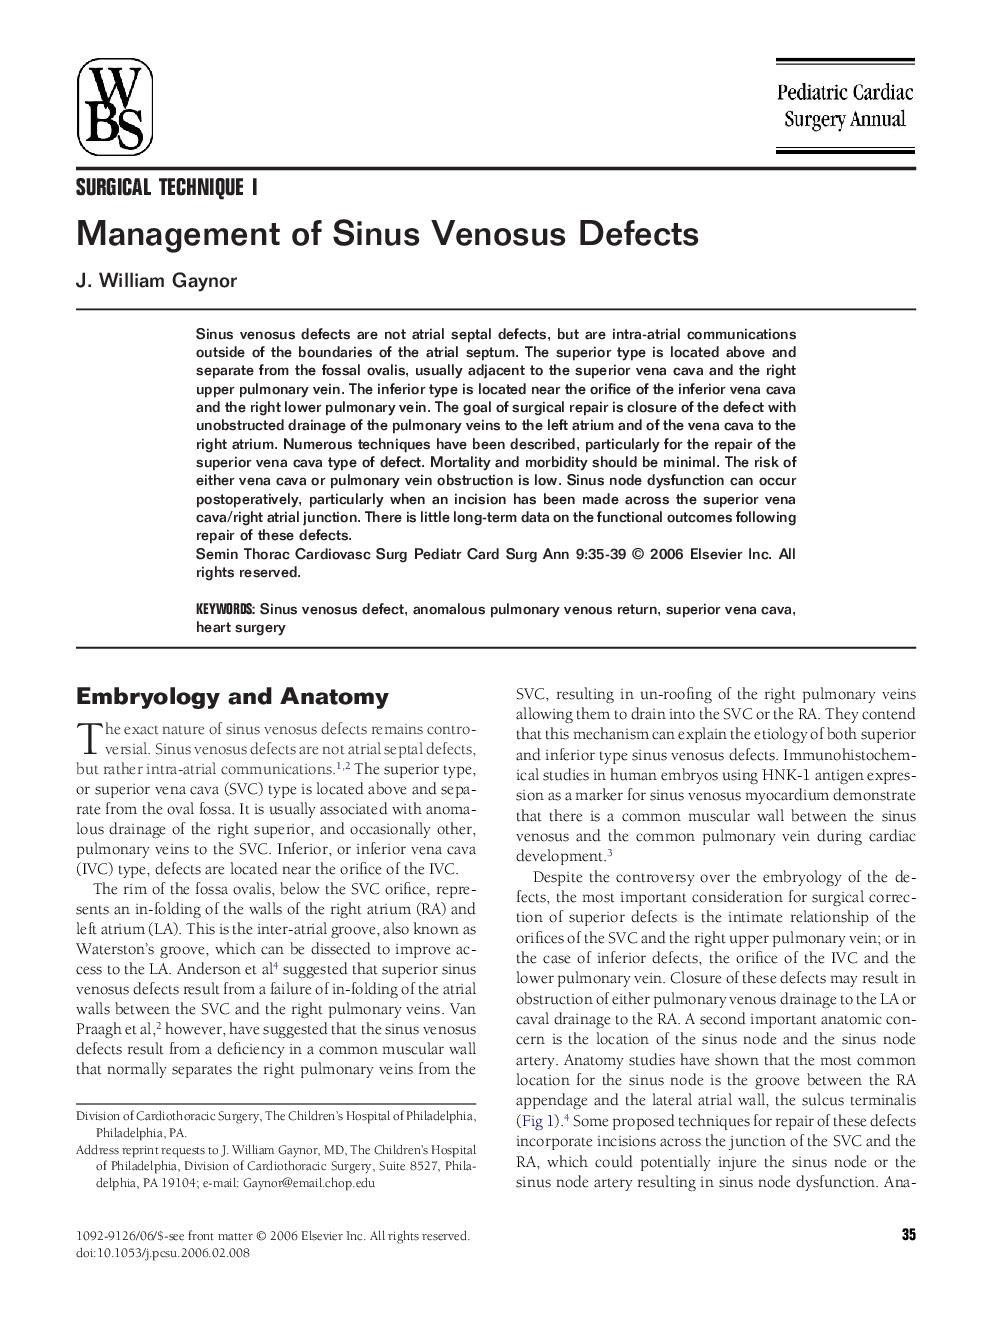 Management of Sinus Venosus Defects